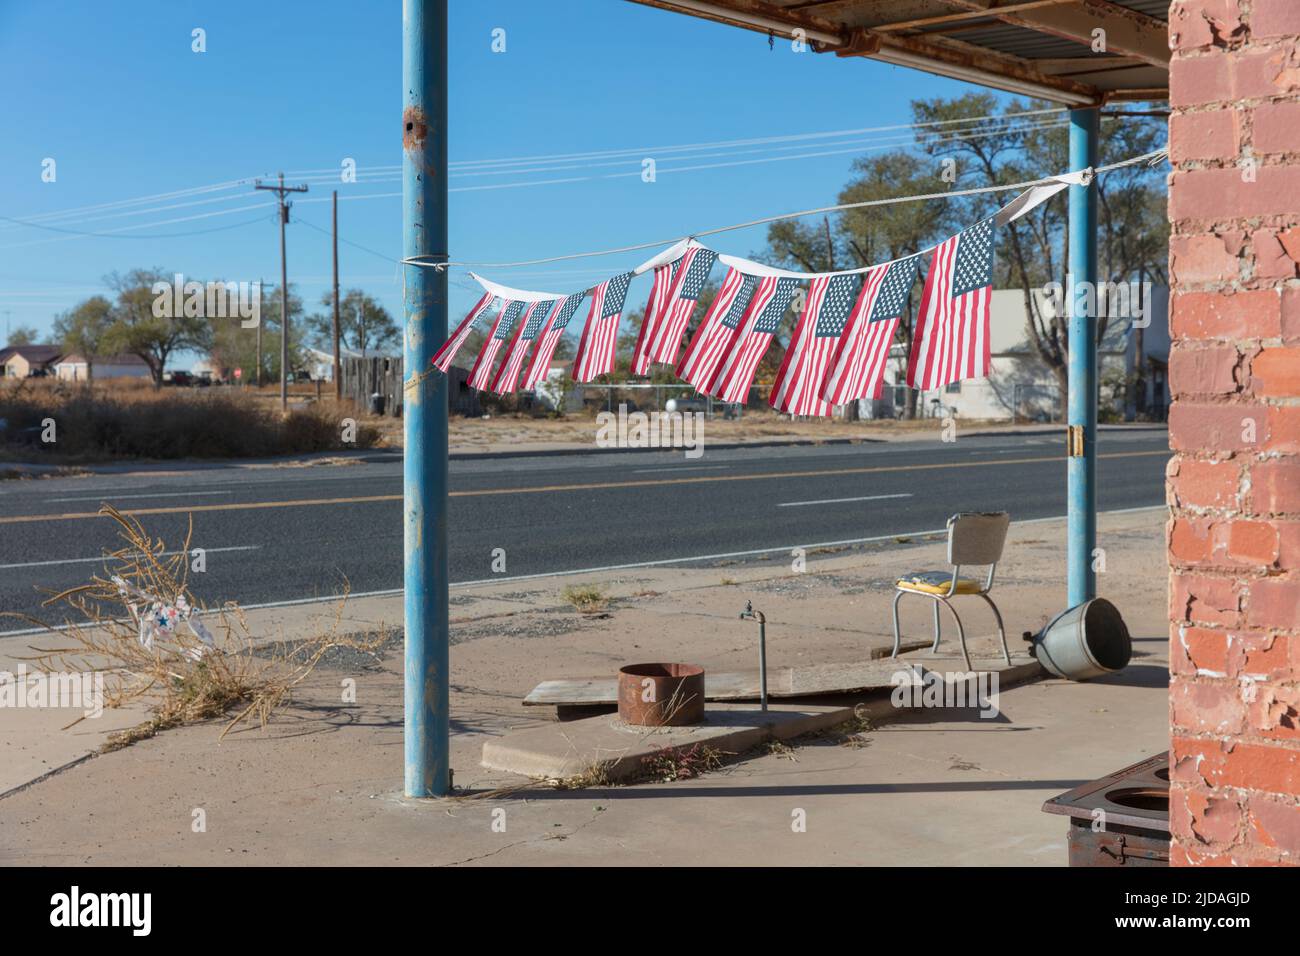 Banderas americanas frente a la gasolinera abandonada. Foto de stock